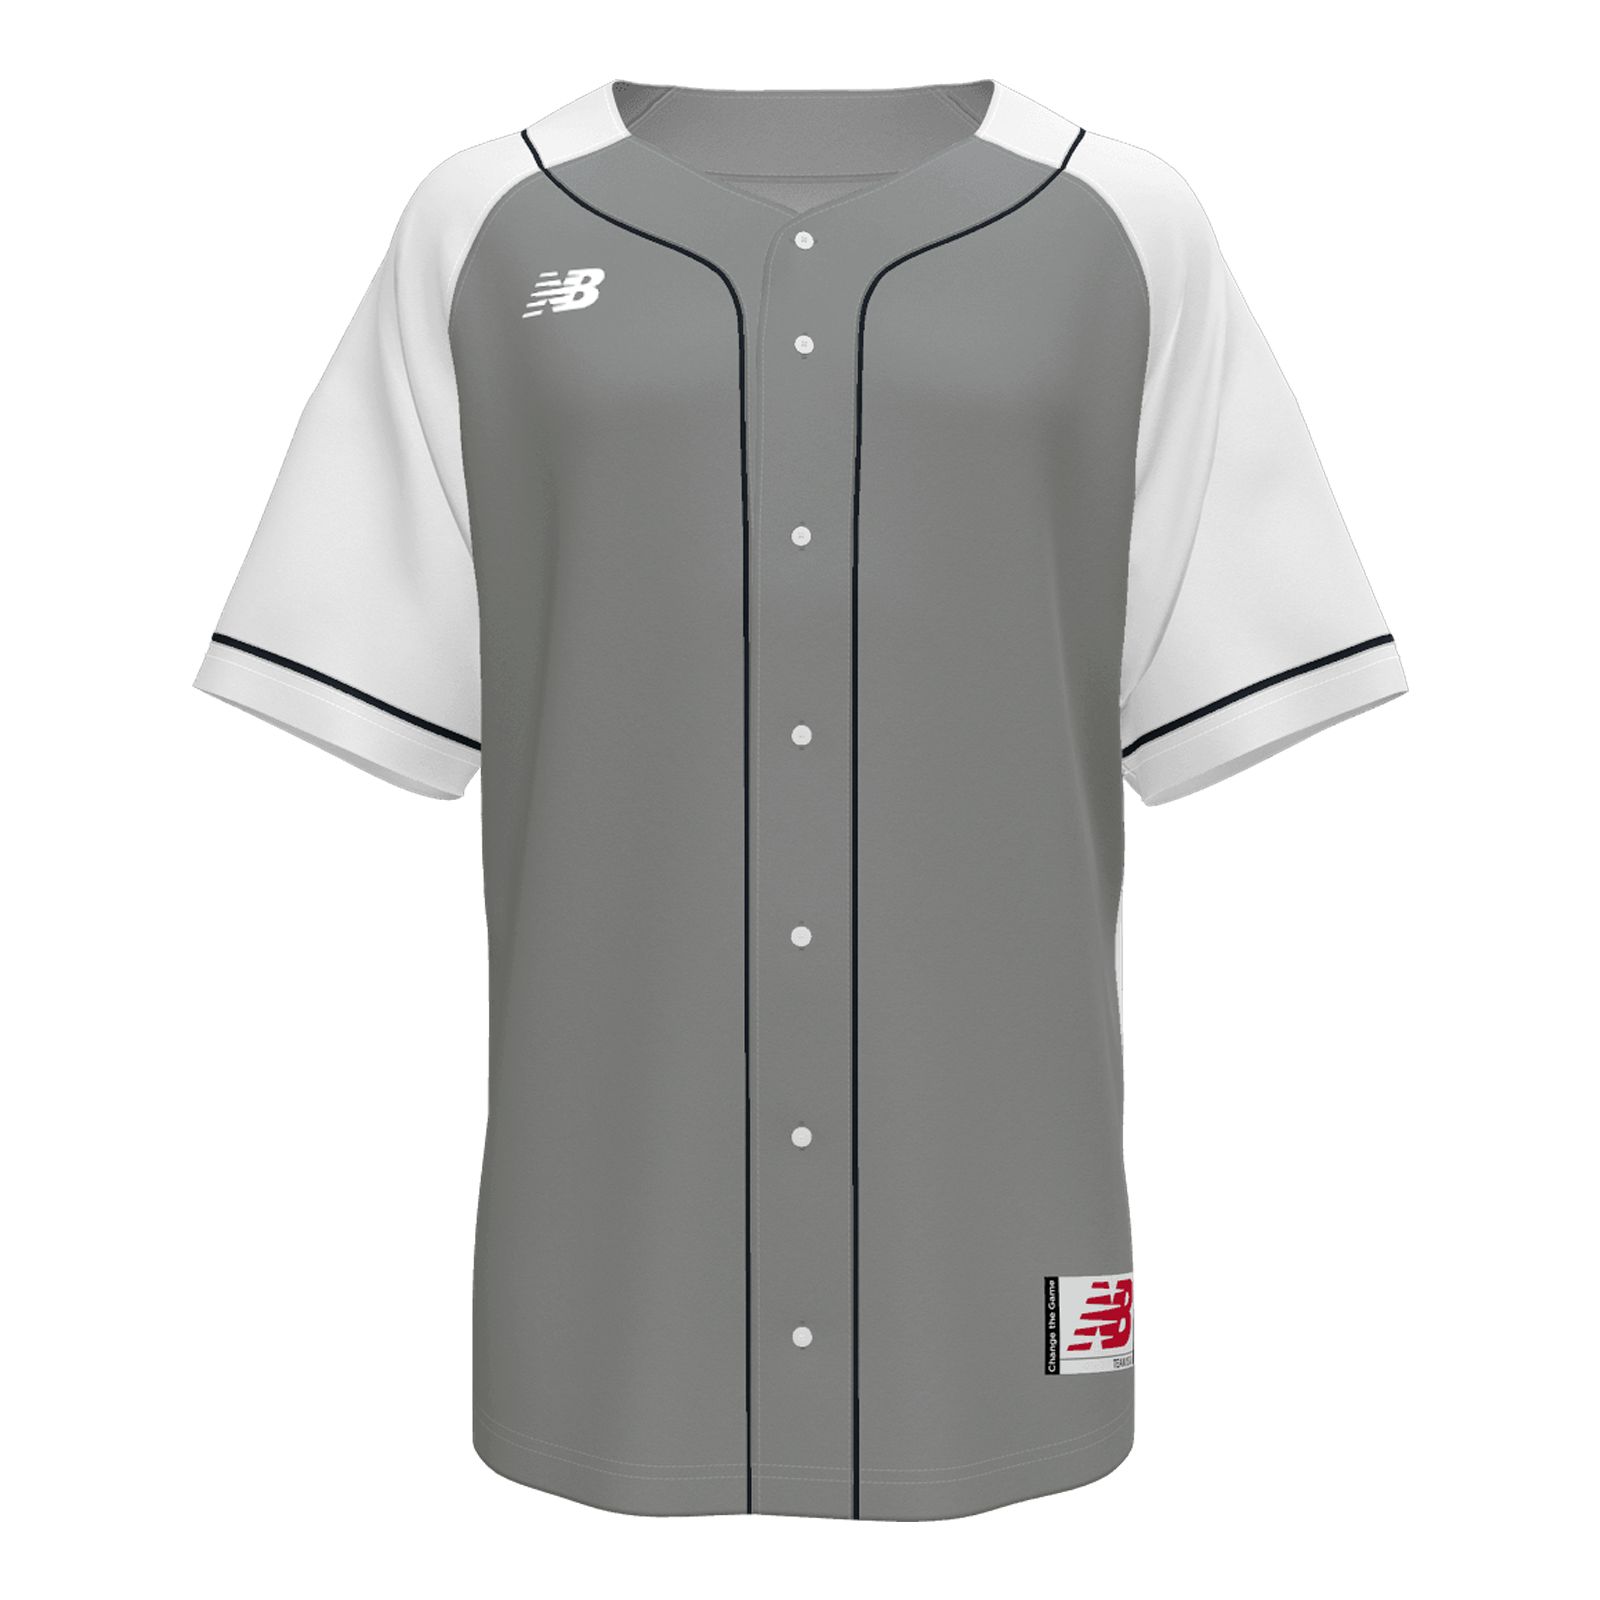 Youth Baseball Custom Jersey's (min. 10 Jerseys)